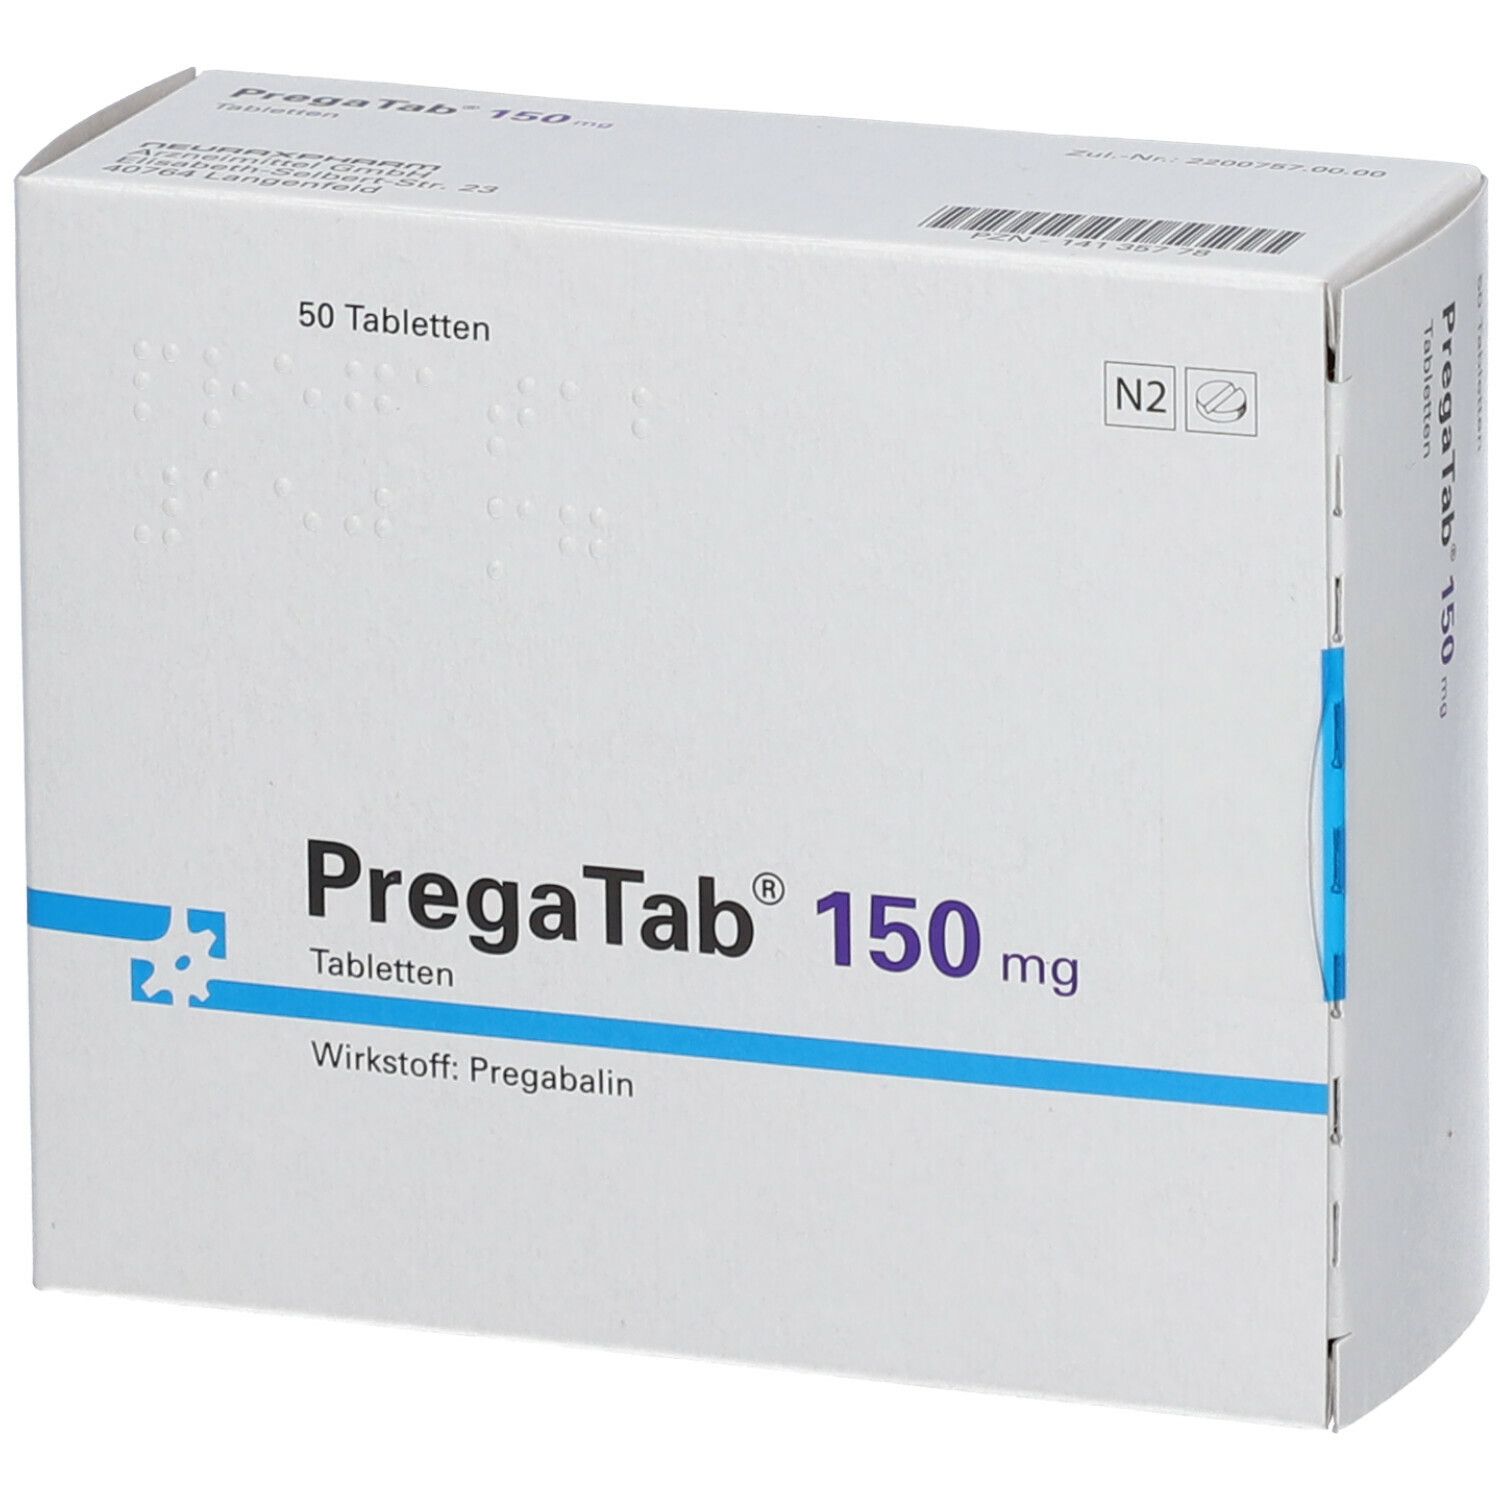 PregaTab® 150 mg